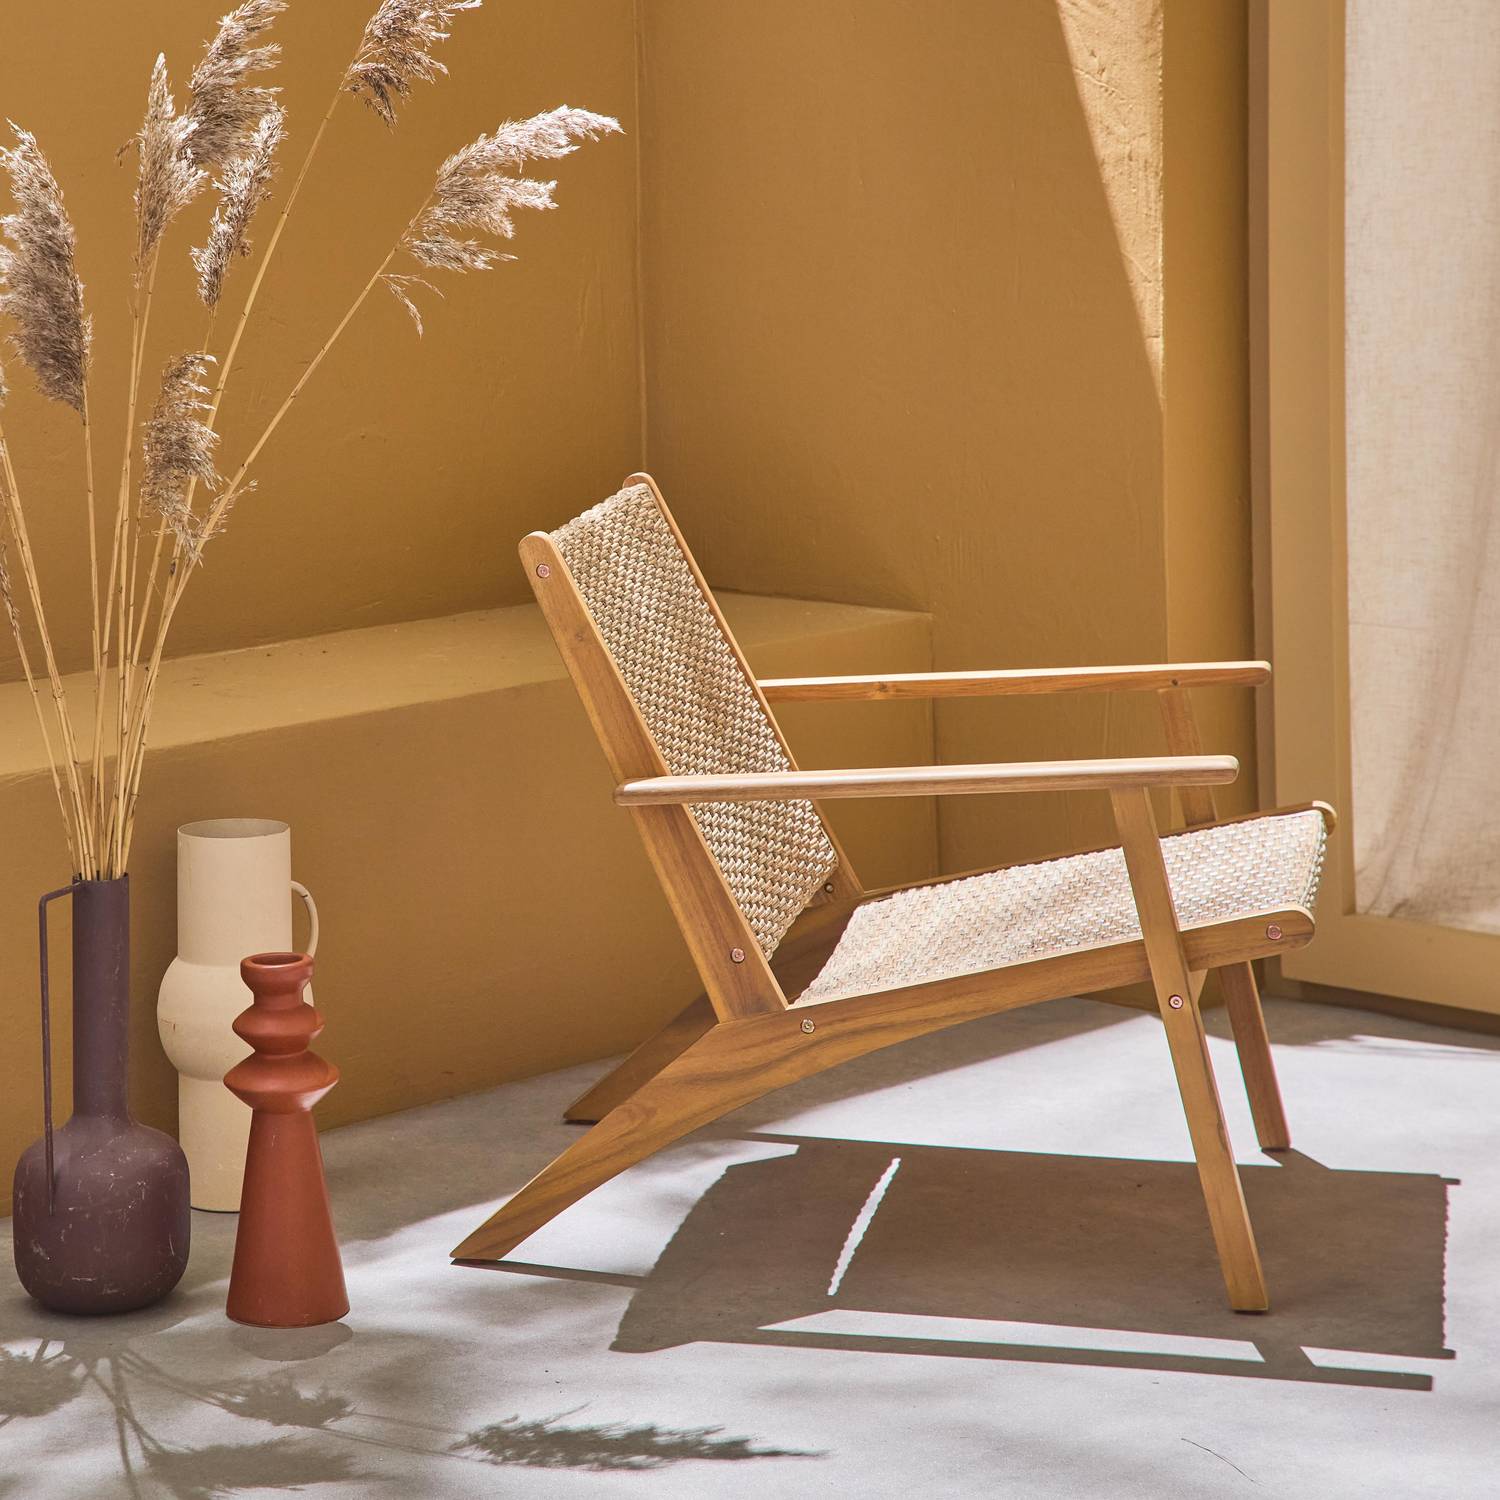 Poltrona reclinabile in legno di acacia e resina FSC, schienale e seduta effetto intrecciato, 62 x 78 x 67 cm BELIZE Photo2